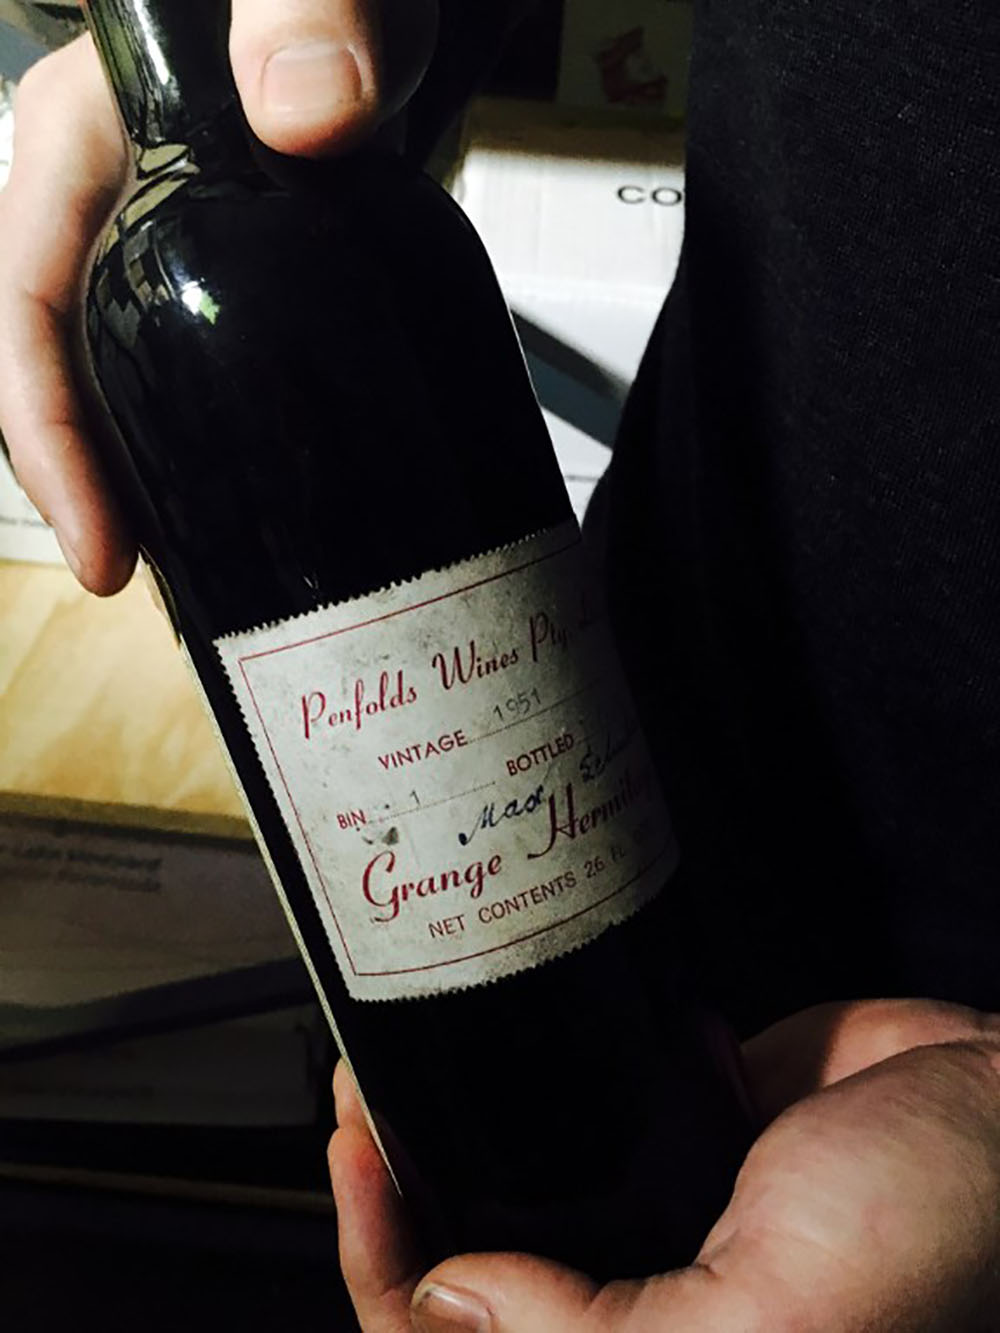 Plus de 35.000 euros pour une rare bouteille de rouge australien